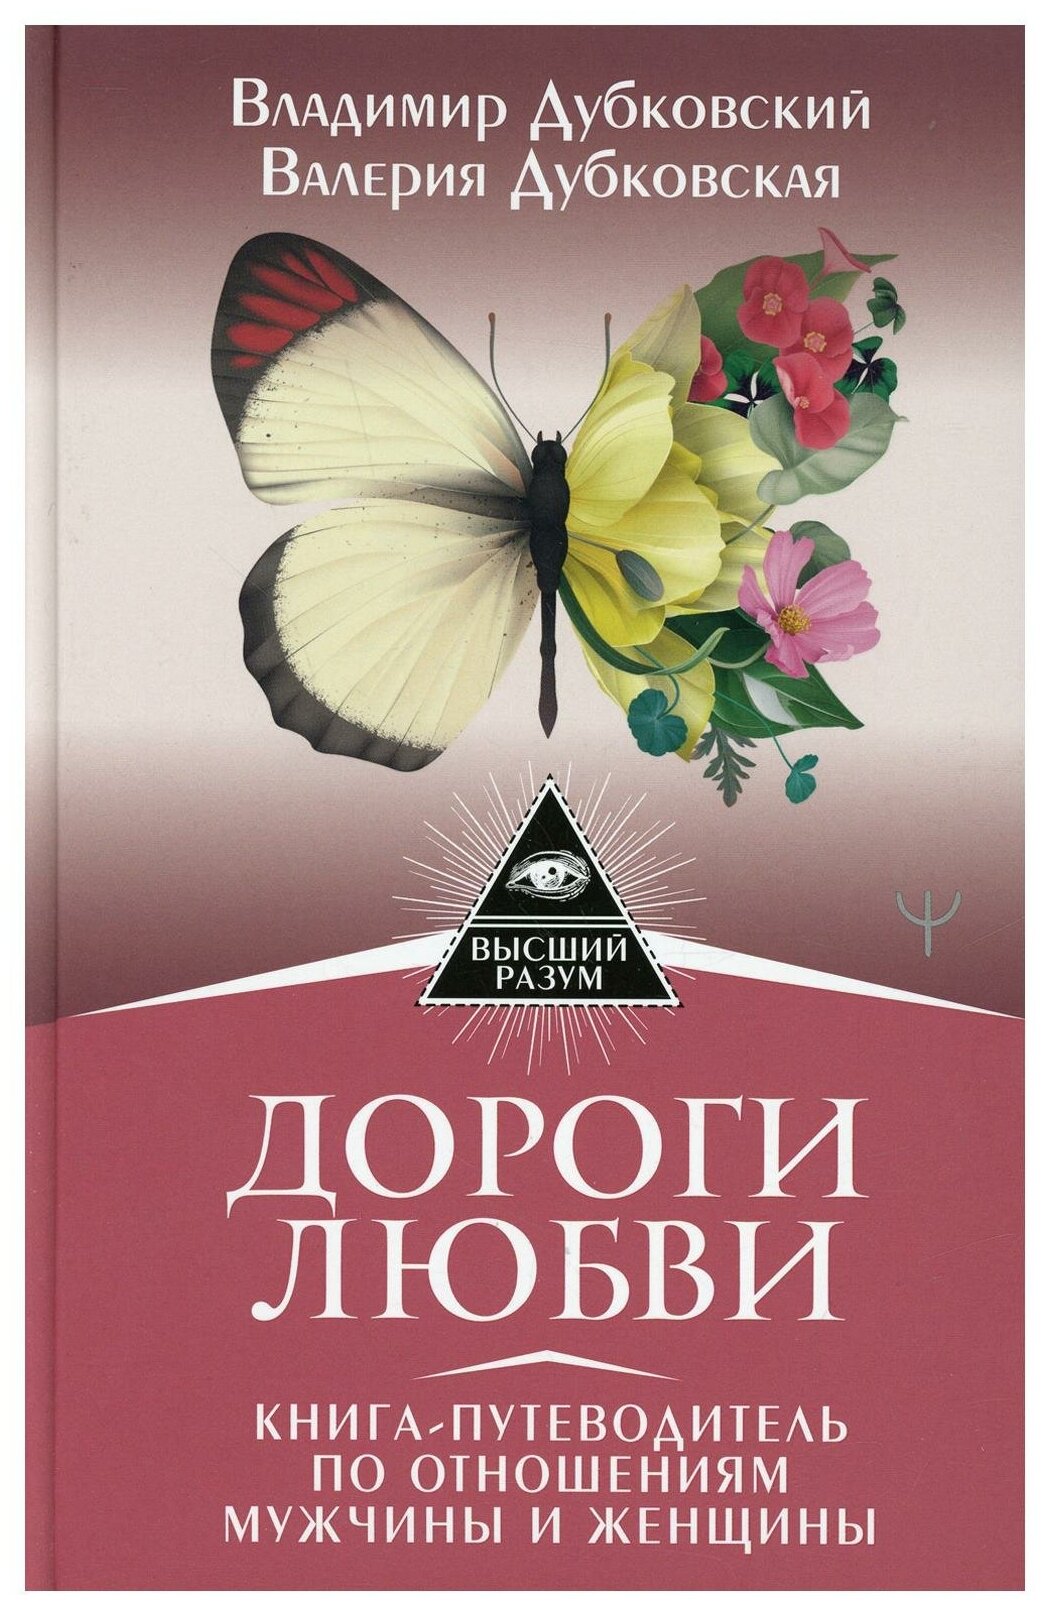 Дороги любви Книга путеводитель по отношениям мужчины и женщины Книга Дубковский ВЕ 16+